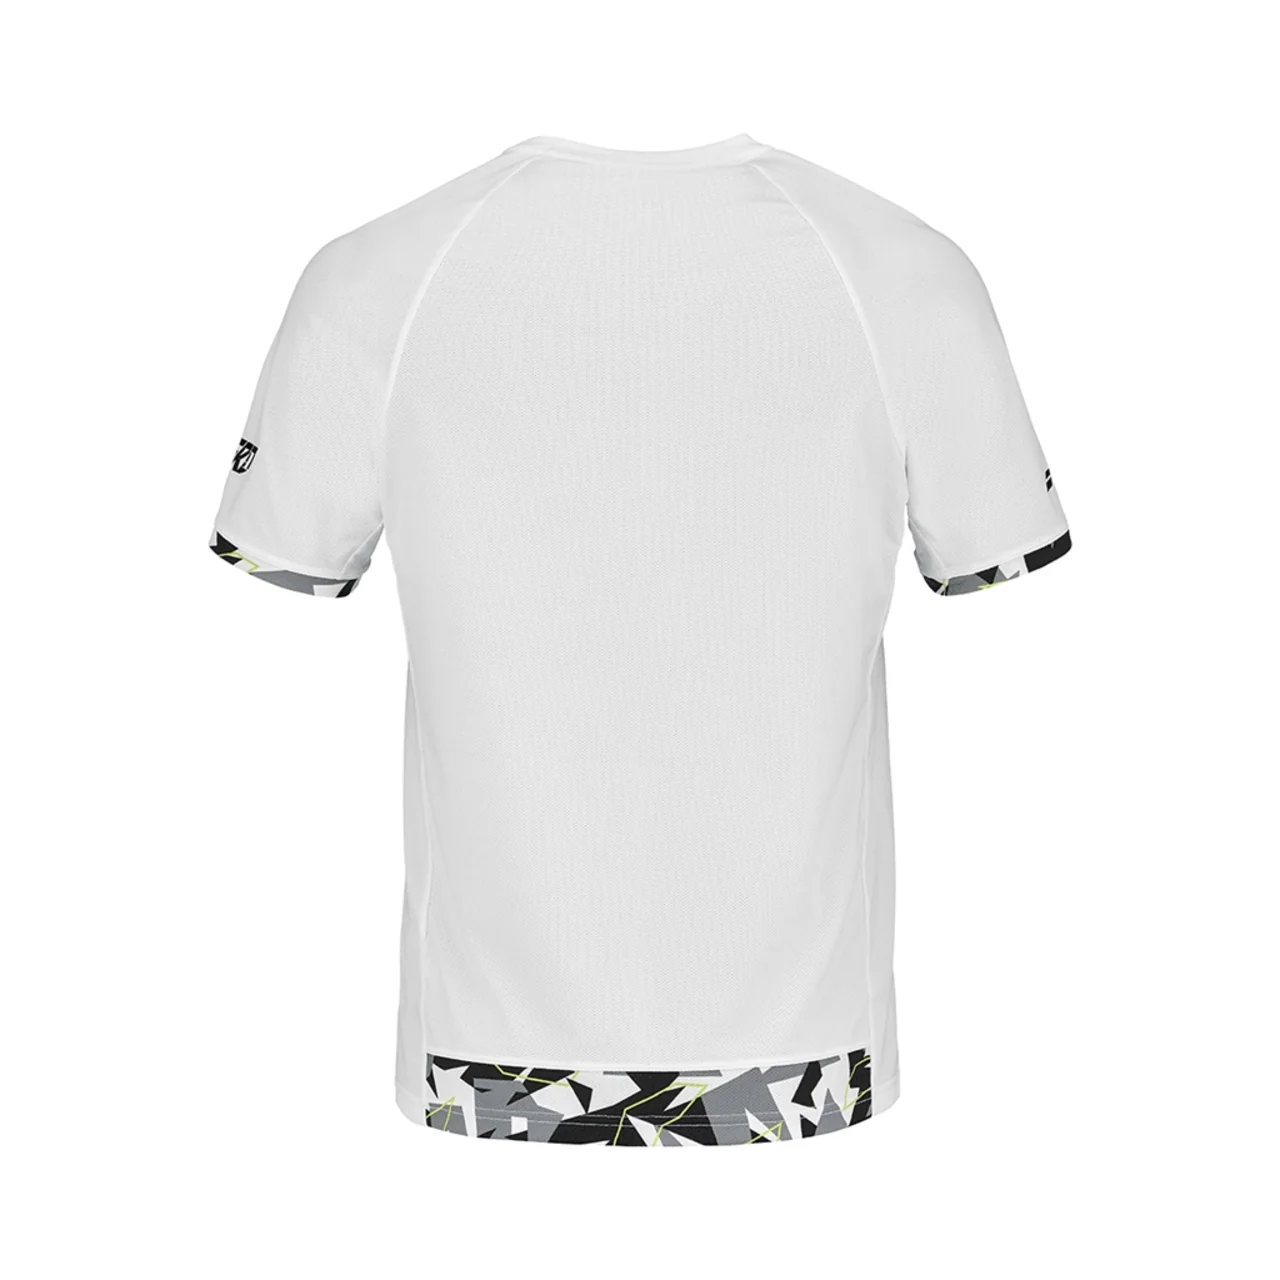 Babolat T-shirt Crew Neck Aero White